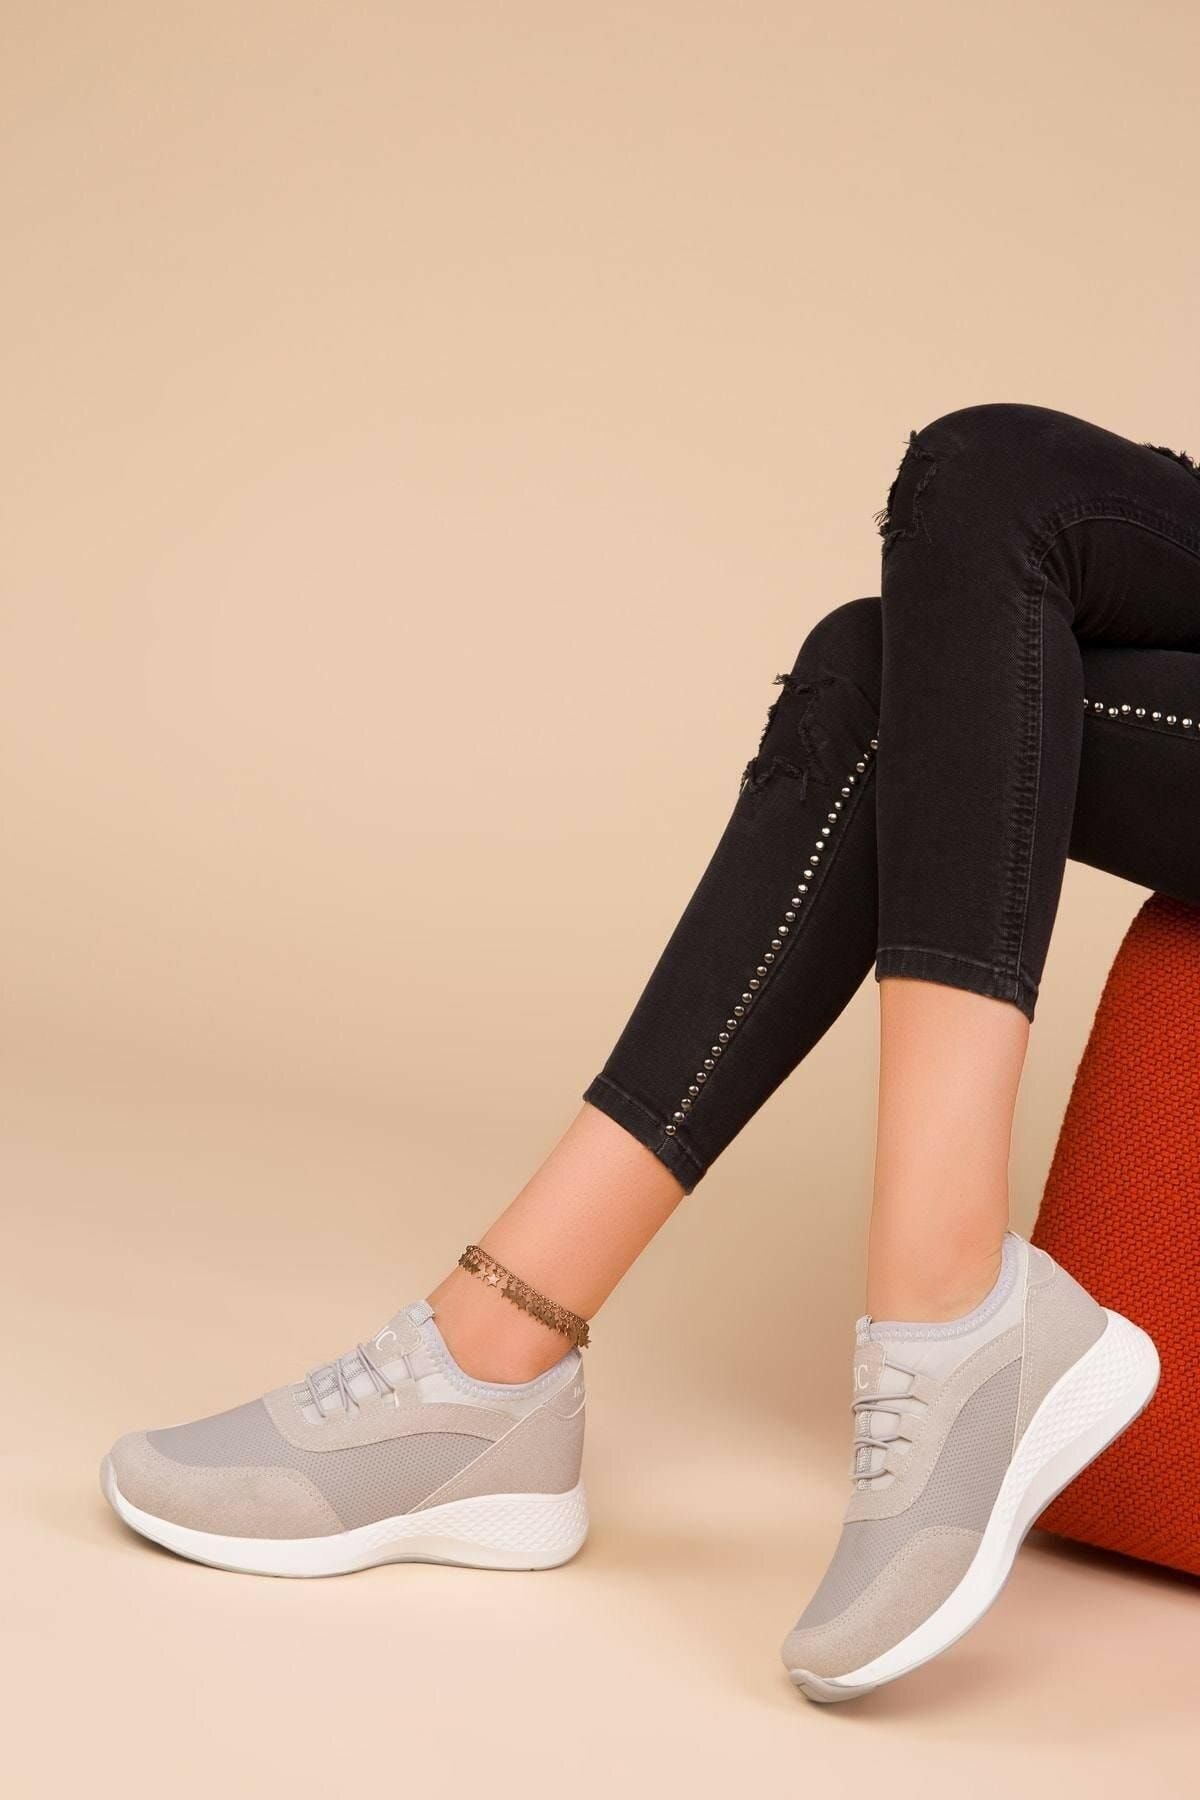 ODESA AYAKKABI MARKET Kadın Exclusive Casual Sneaker Spor Ayakkabı